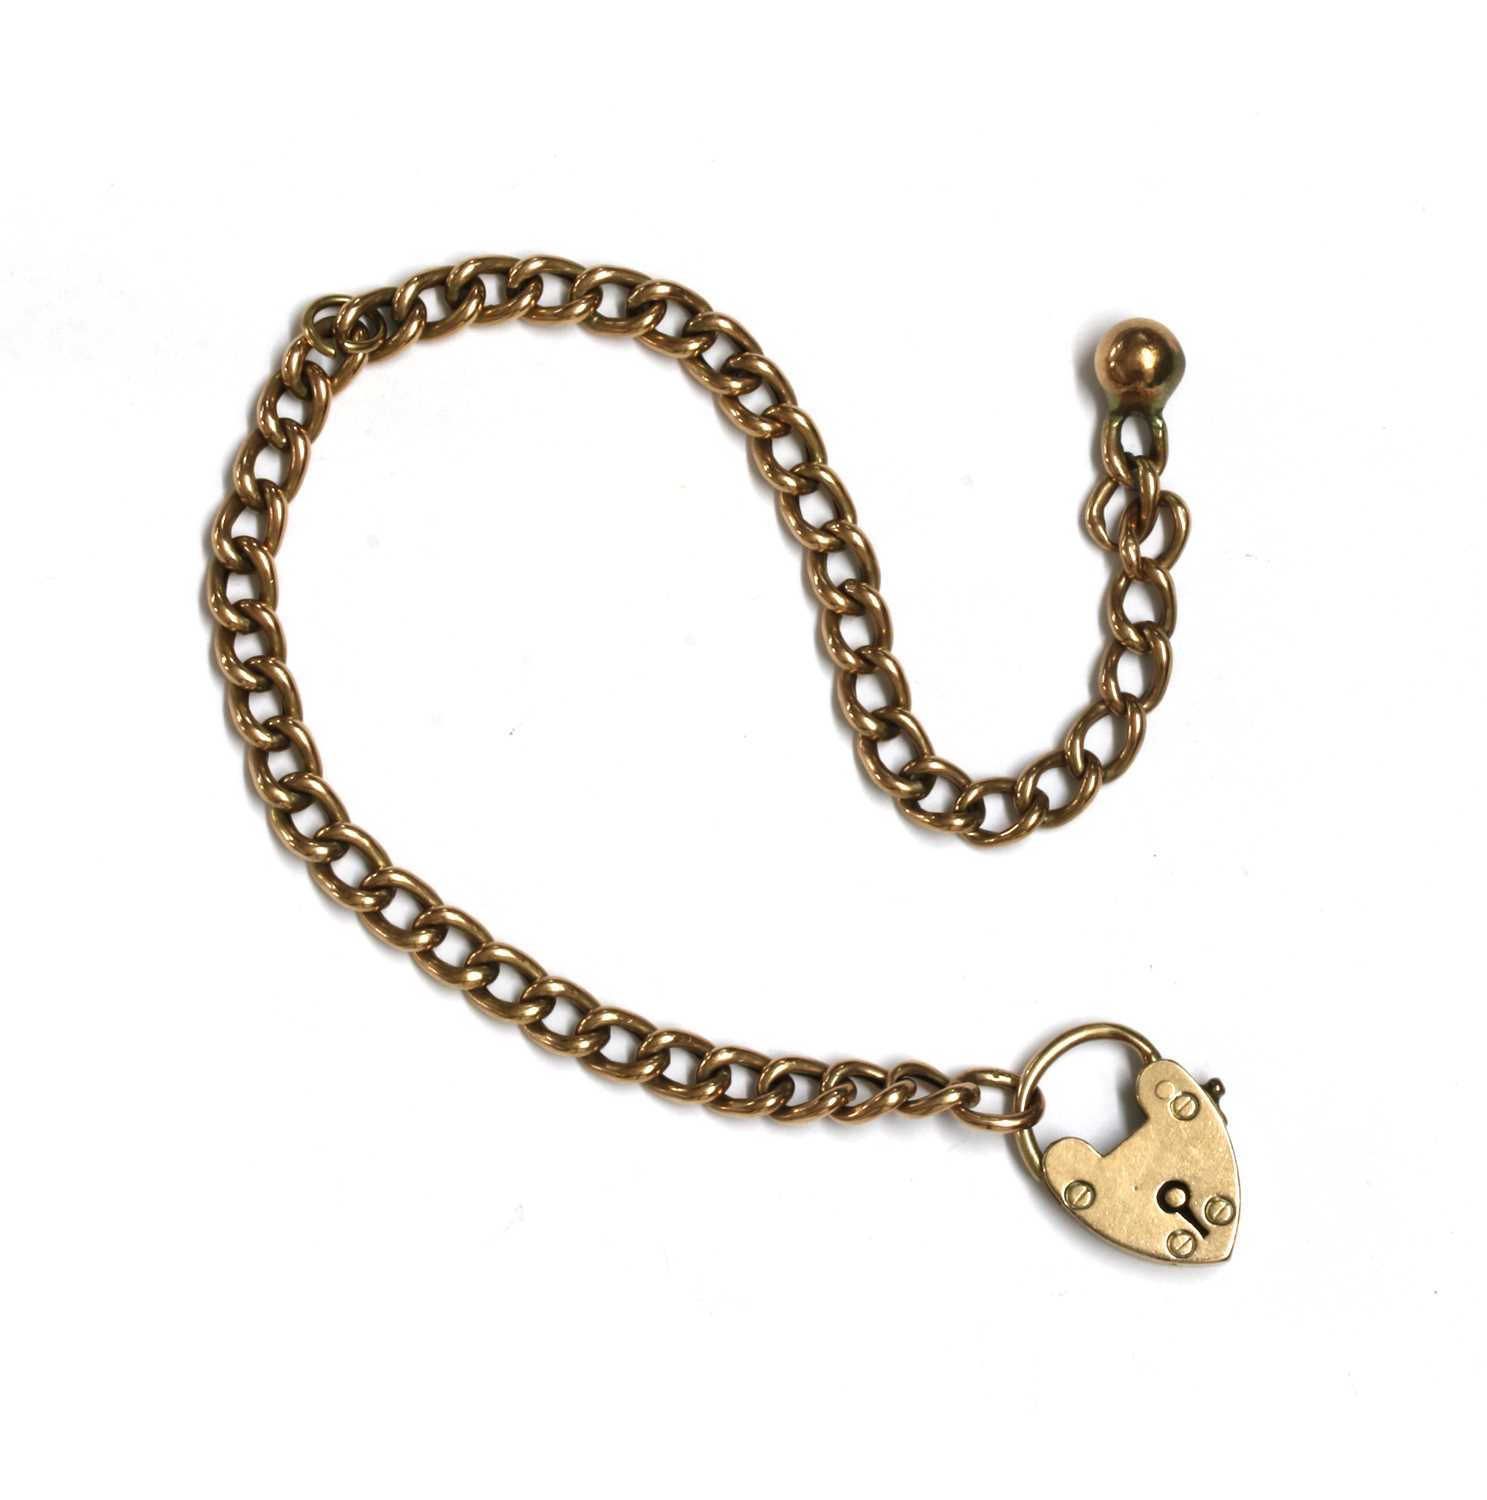 Lot 113 - A gold hollow curb link bracelet